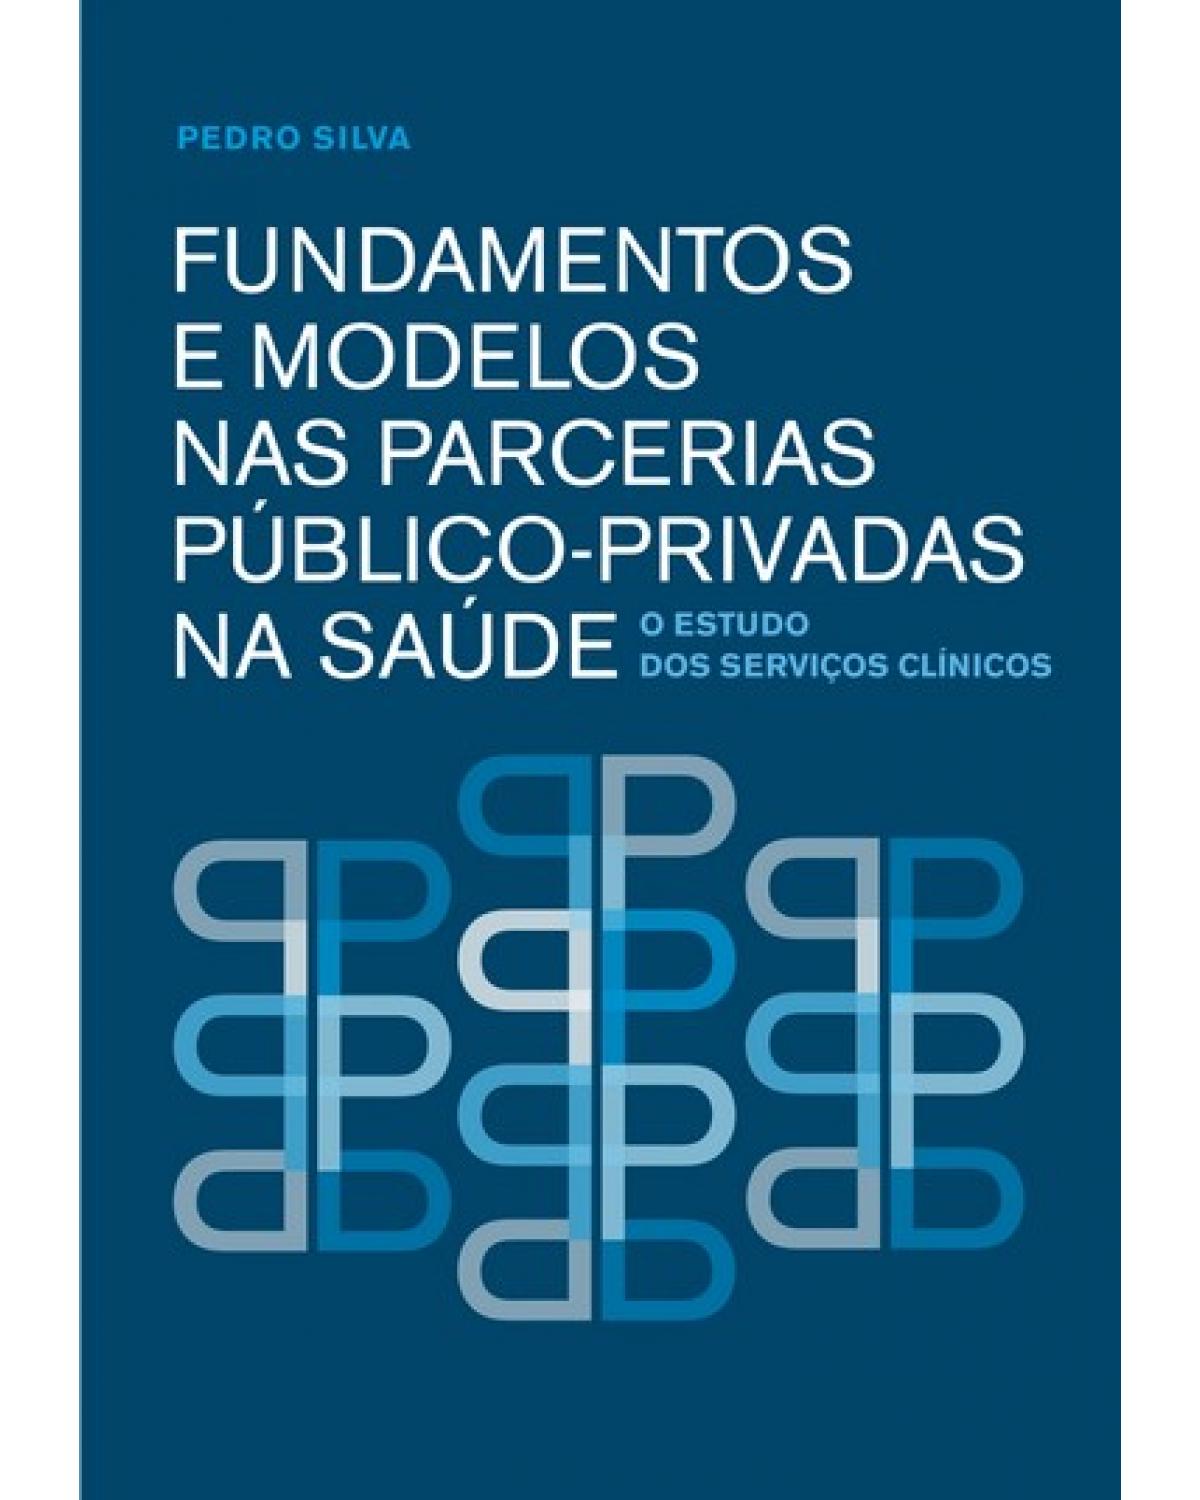 Fundamentos e modelos nas parcerias público-privadas na saúde - o estudo dos serviços clínicos - 1ª Edição | 2009